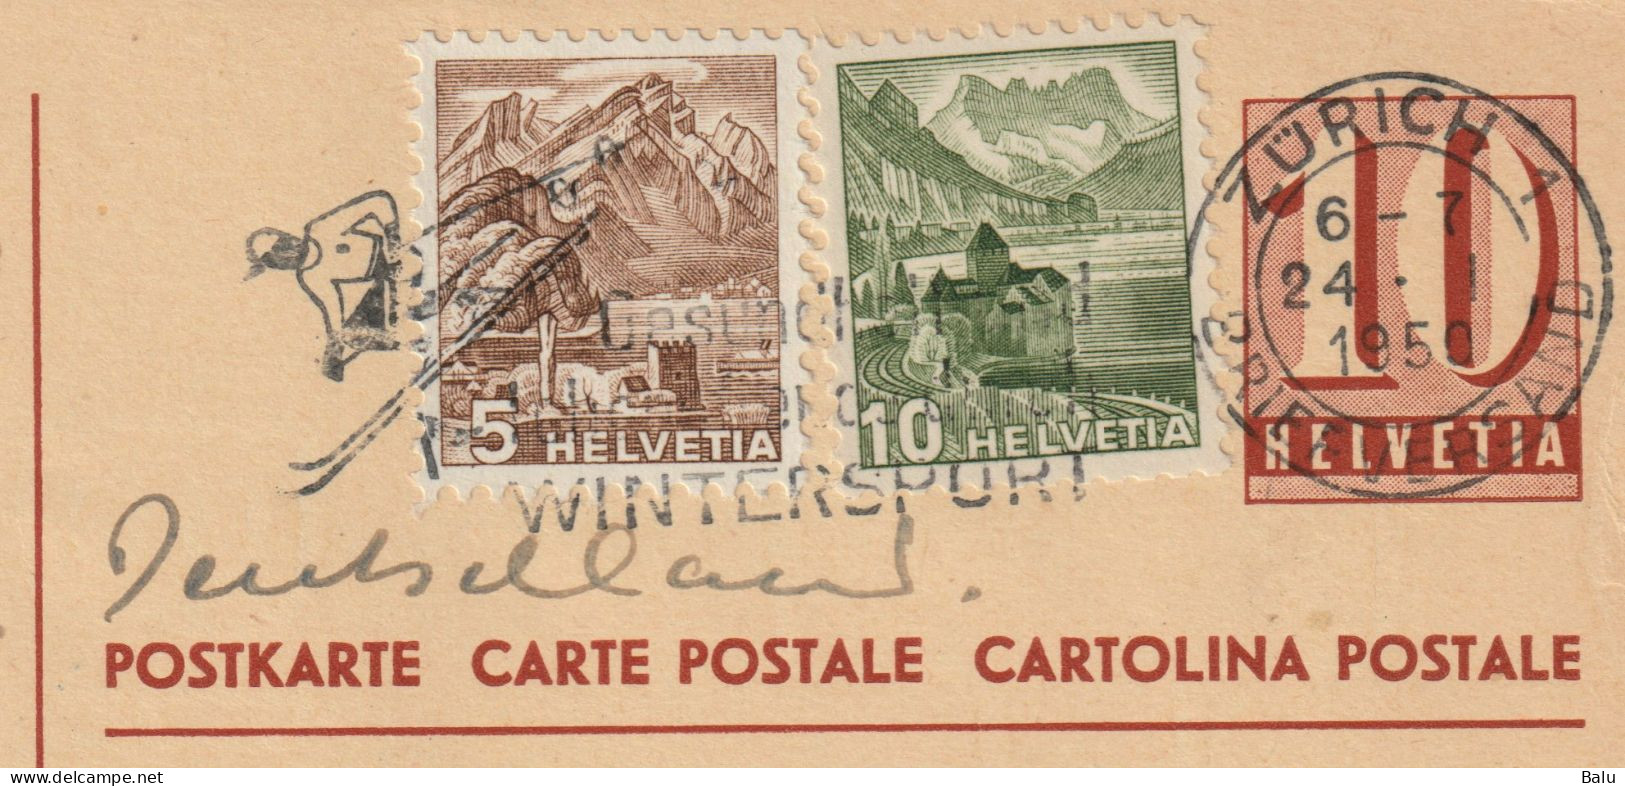 Schweiz 2 Ganzsachen Postkarten Ziffer 10 C. Zürich 1950 Mit Je 2 Zusatzfrankaturen 5 + 10c., 3 Scans, Entier Postal - Ganzsachen